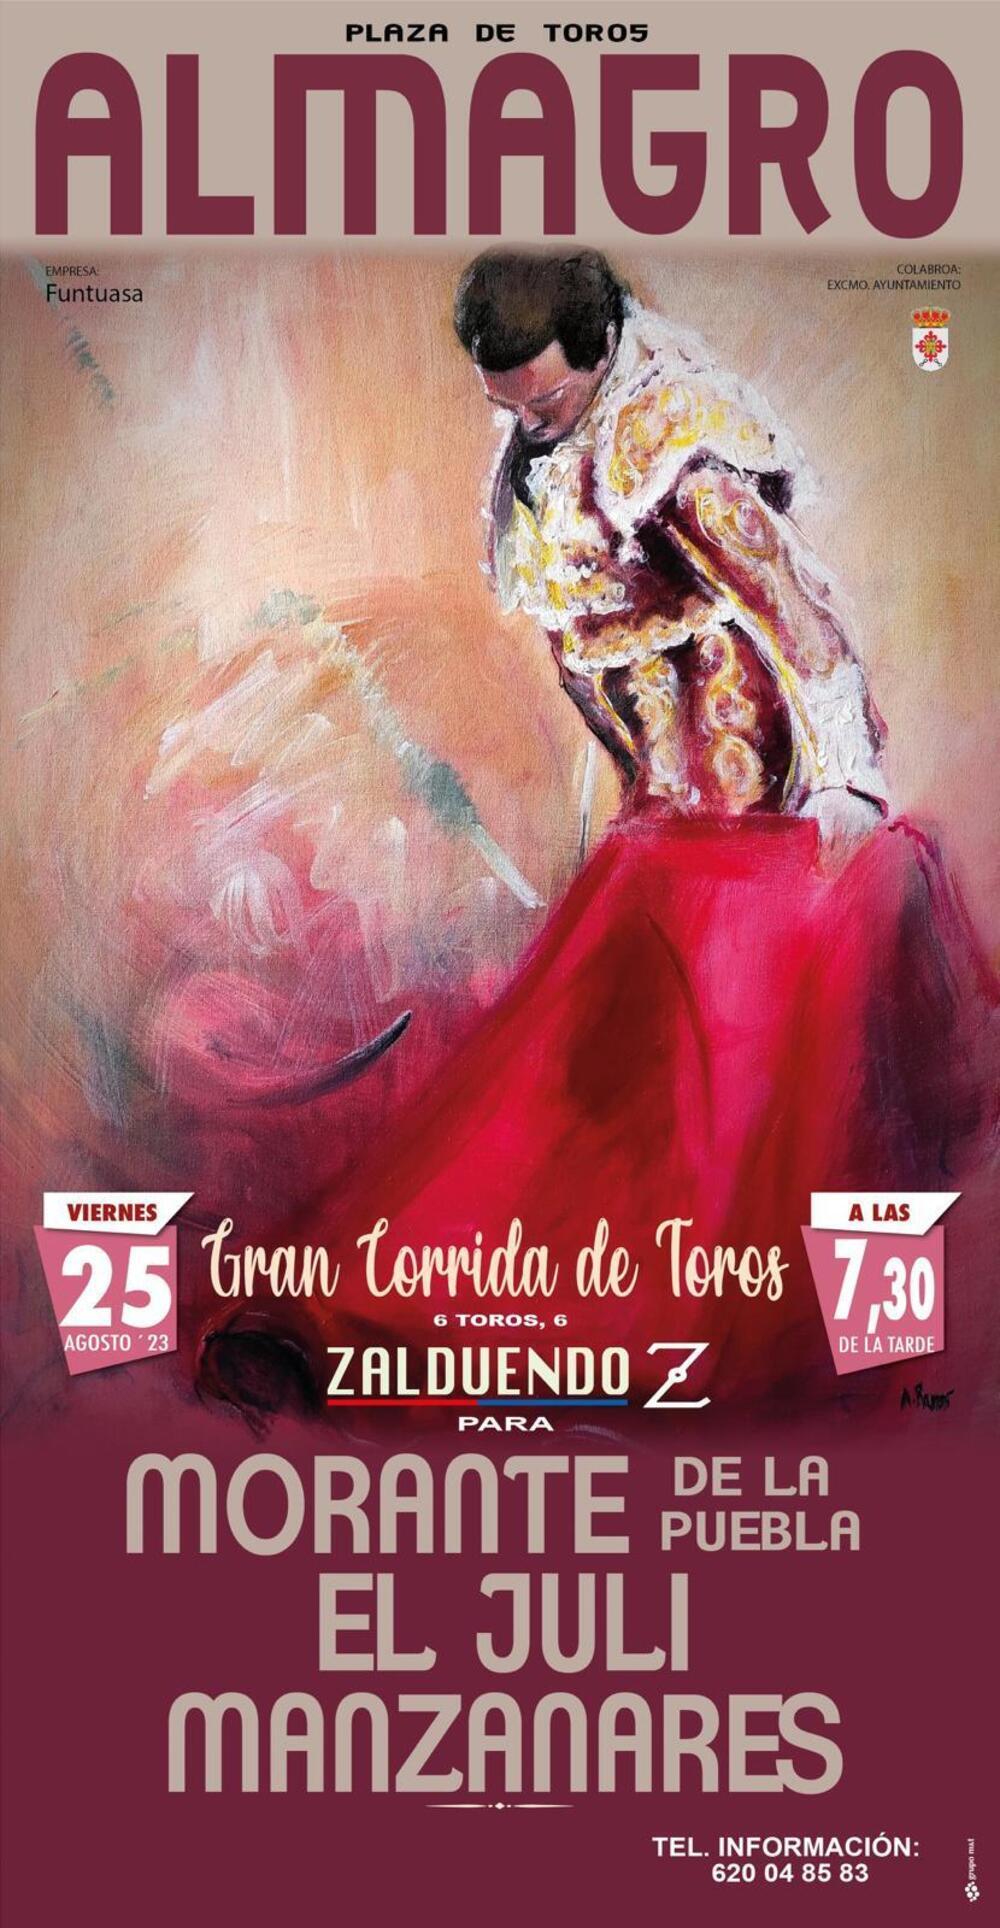 Morante, 'El Juli' y Manzanares, cartel taurino de Almagro 